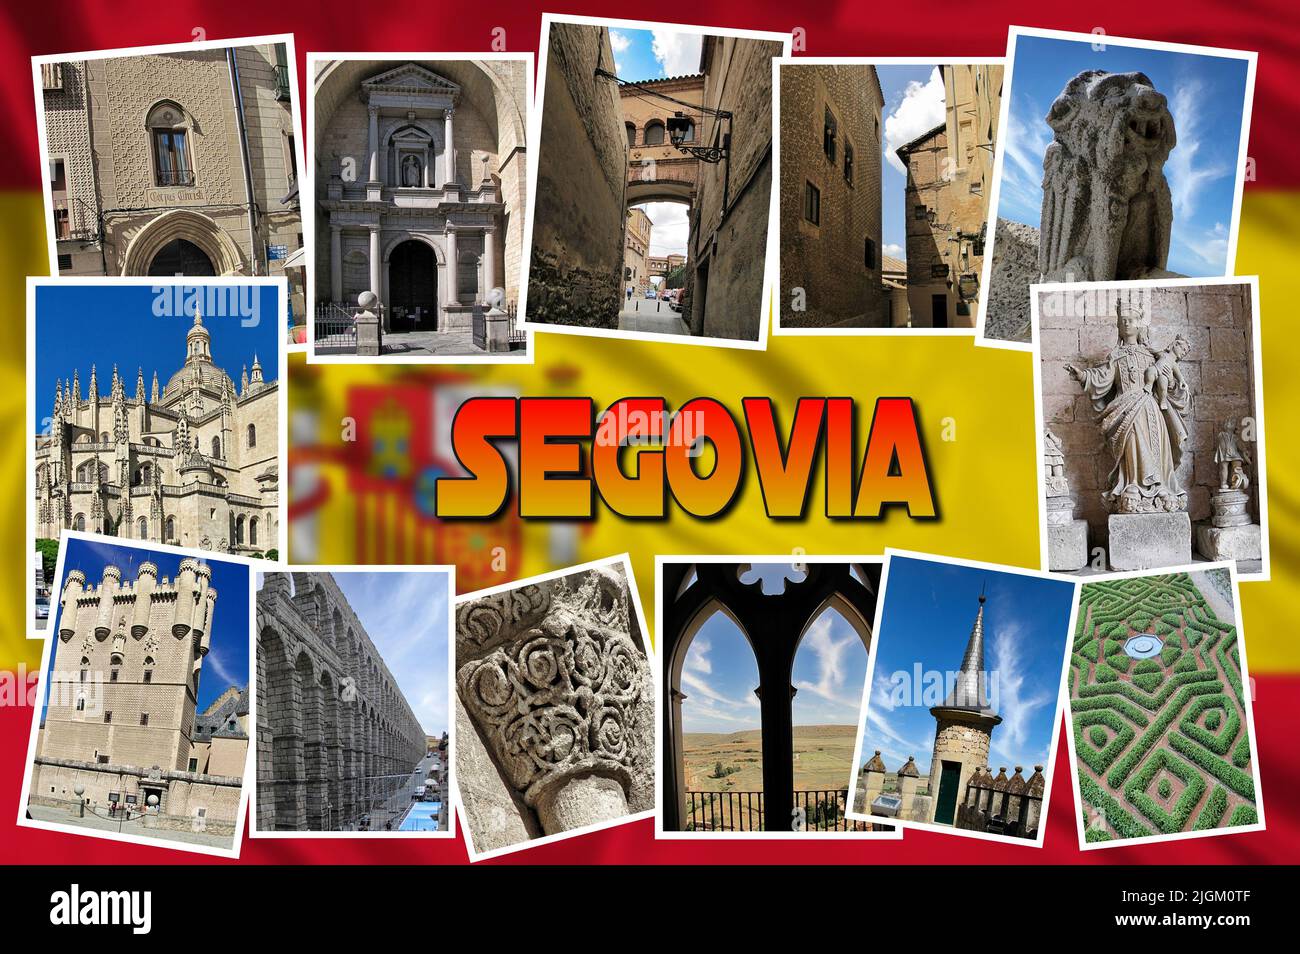 Segovia ist eine historische spanische Stadt Jahrhunderte von Siedlungen haben zu einem reichen architektonischen Erbe geführt, darunter mittelalterliche Mauern und romanische Kirchen Stockfoto